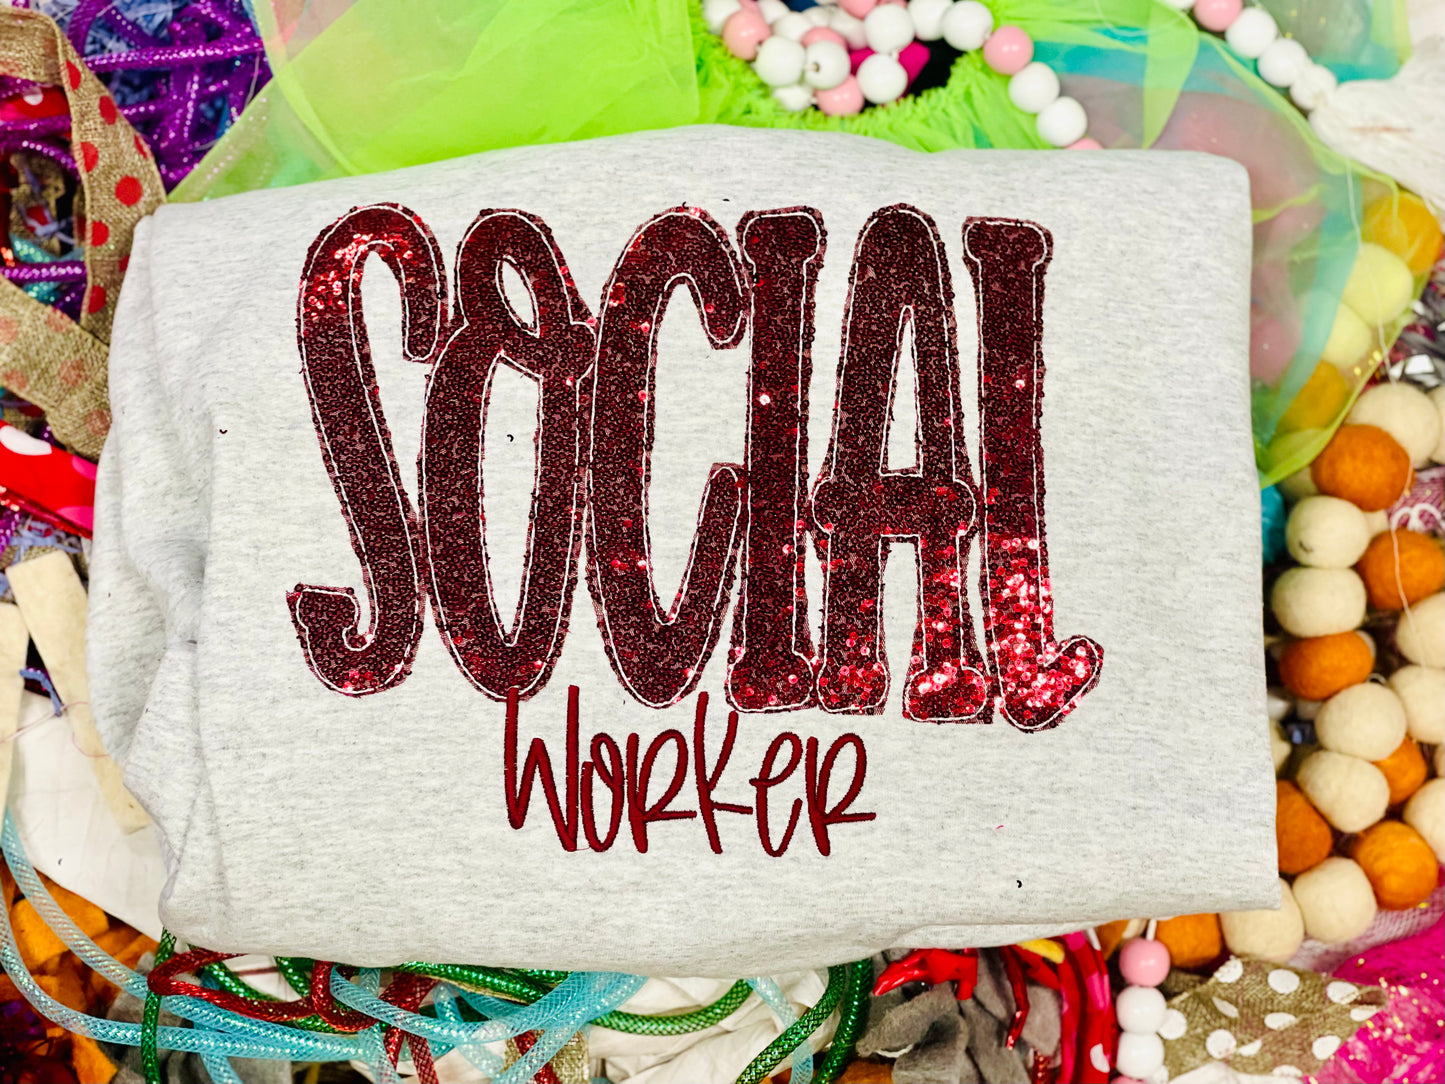 Custom Team Social worker Tee/Sweatshirt